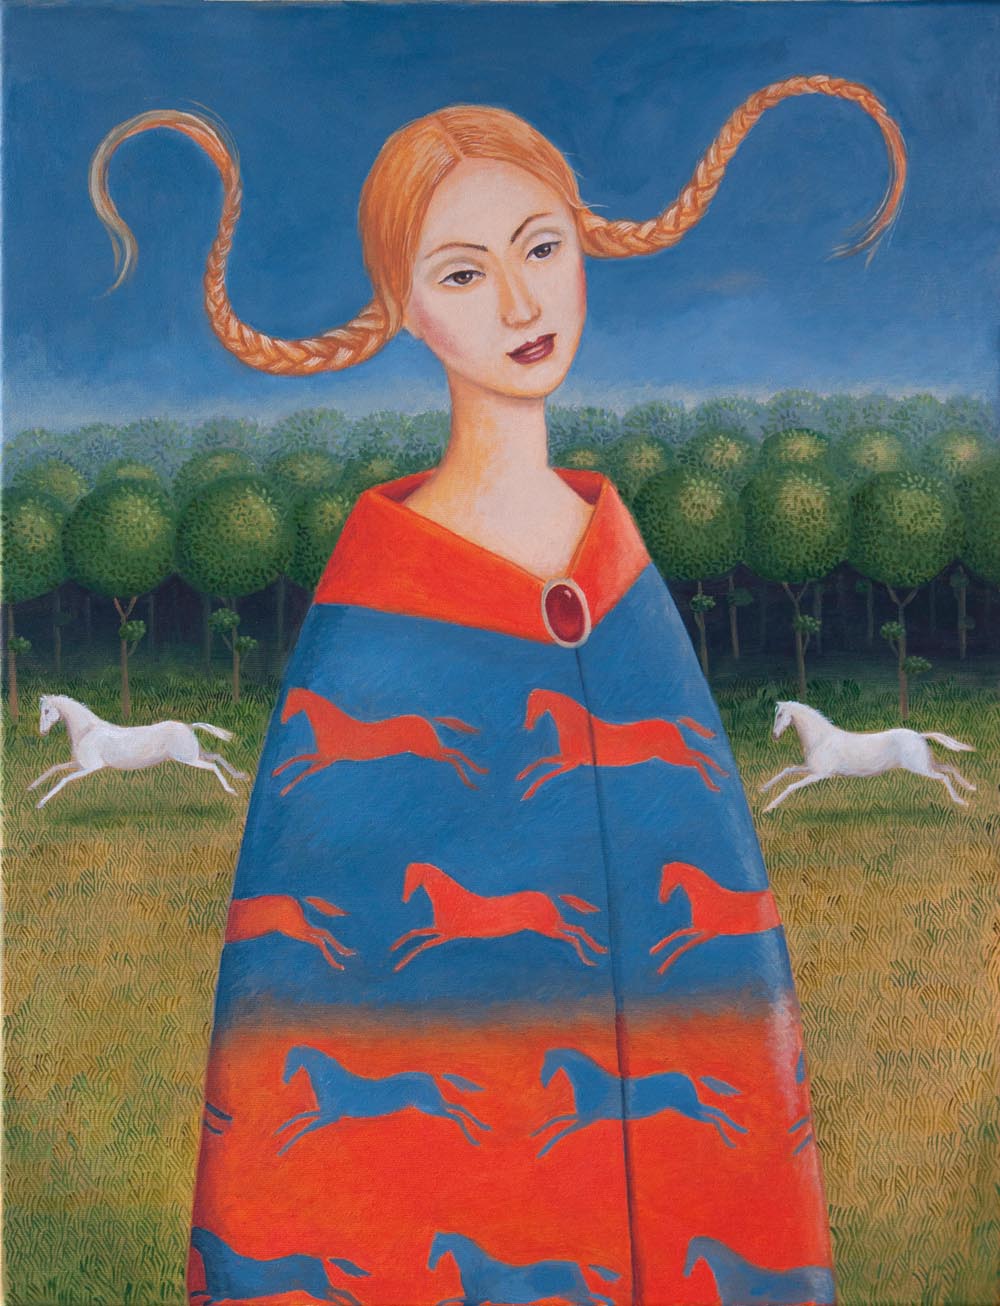 Malwina de Brade, Bez tytułu, olej na płótnie, 70 x 50 cm 